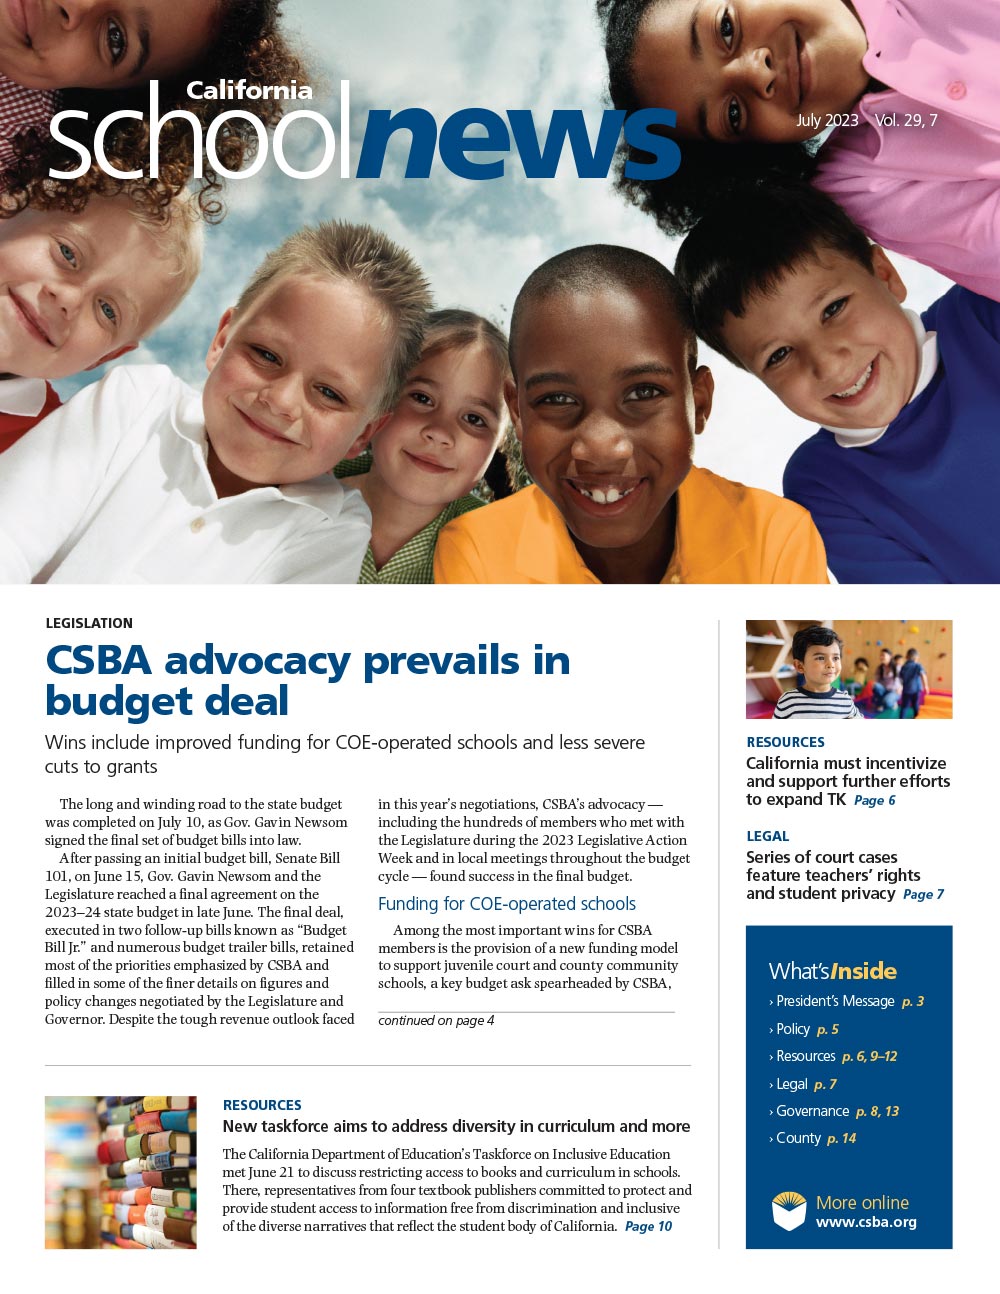 CSBA Newsletter July 2023 cover